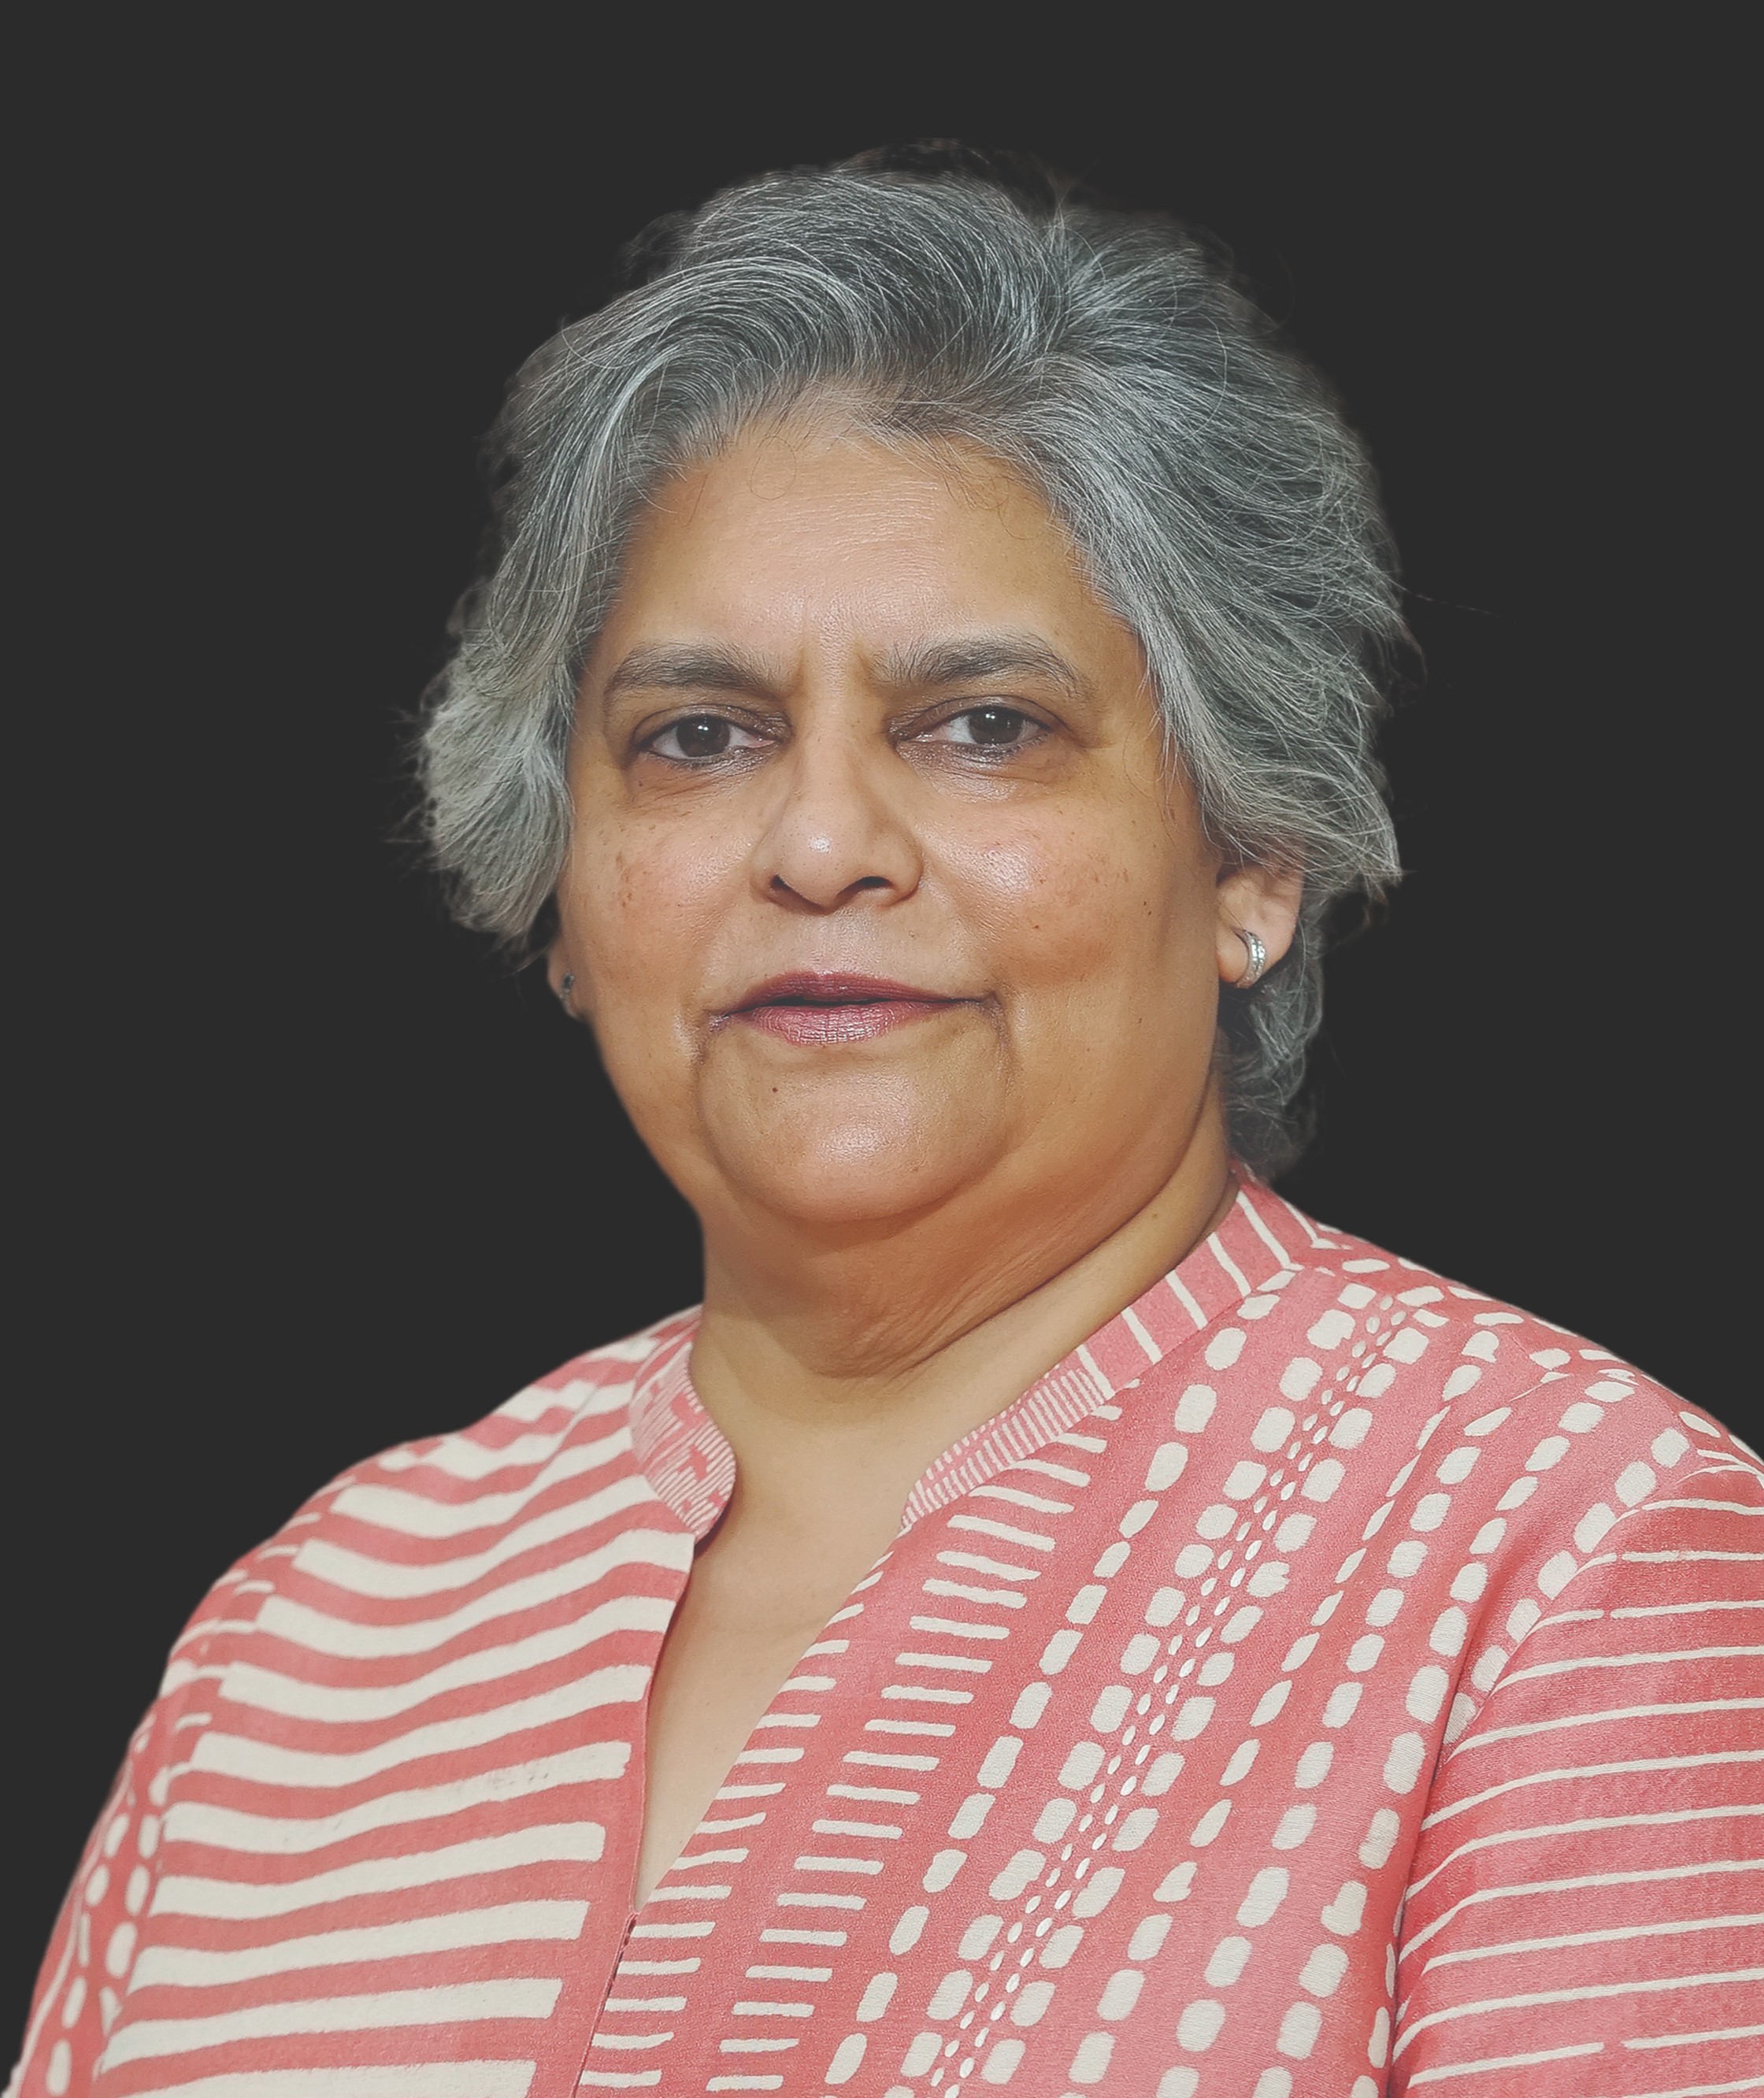 Reshma Patel